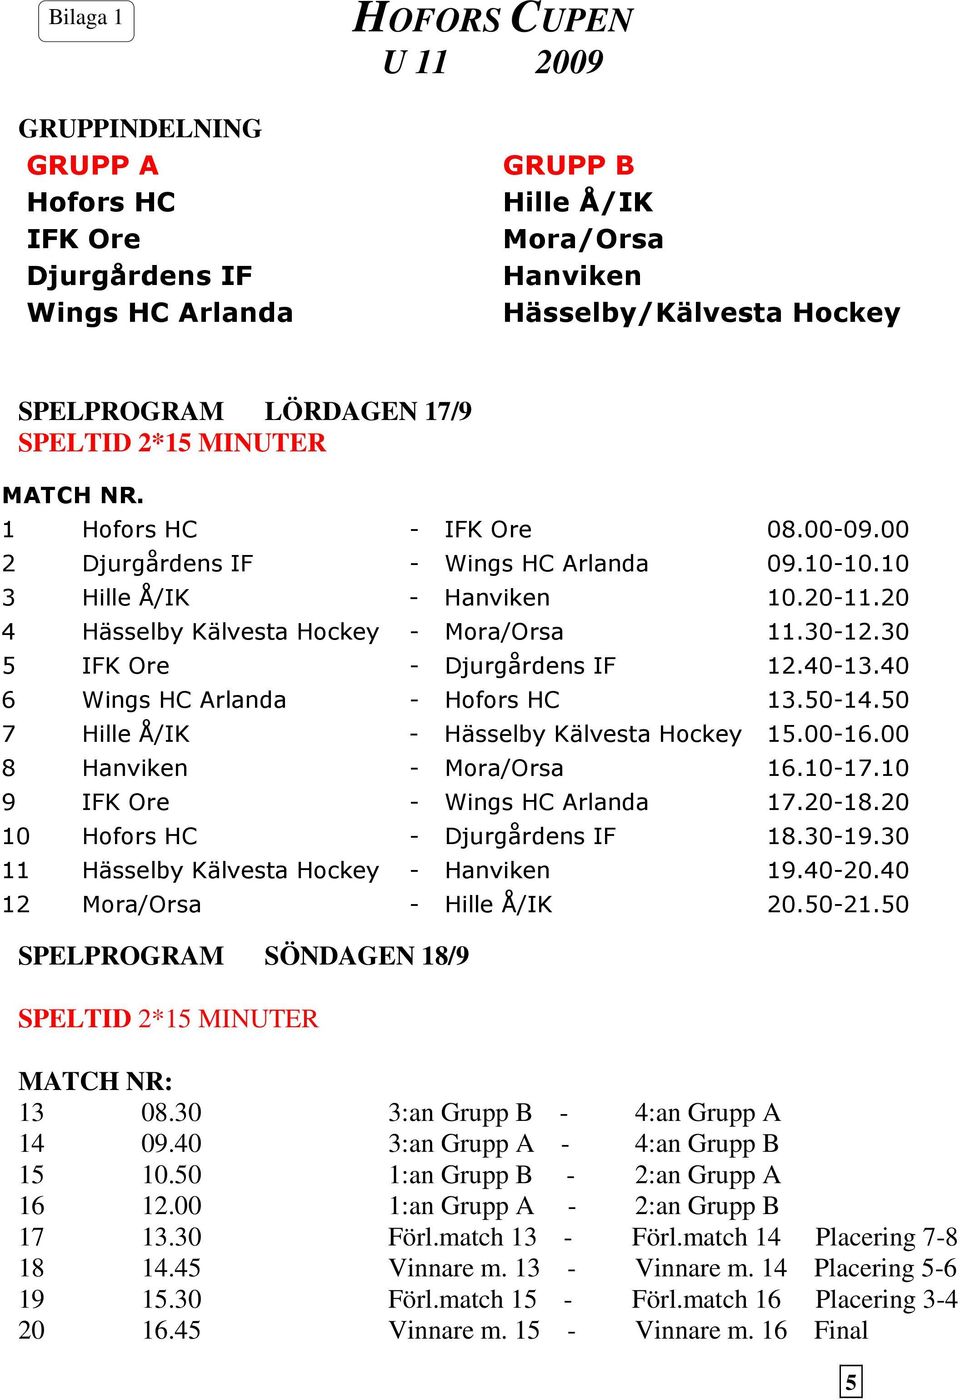 30 5 IFK Ore - Djurgårdens IF 12.40-13.40 6 Wings HC Arlanda - Hofors HC 13.50-14.50 7 Hille Å/IK - Hässelby Kälvesta Hockey 15.00-16.00 8 Hanviken - Mora/Orsa 16.10-17.